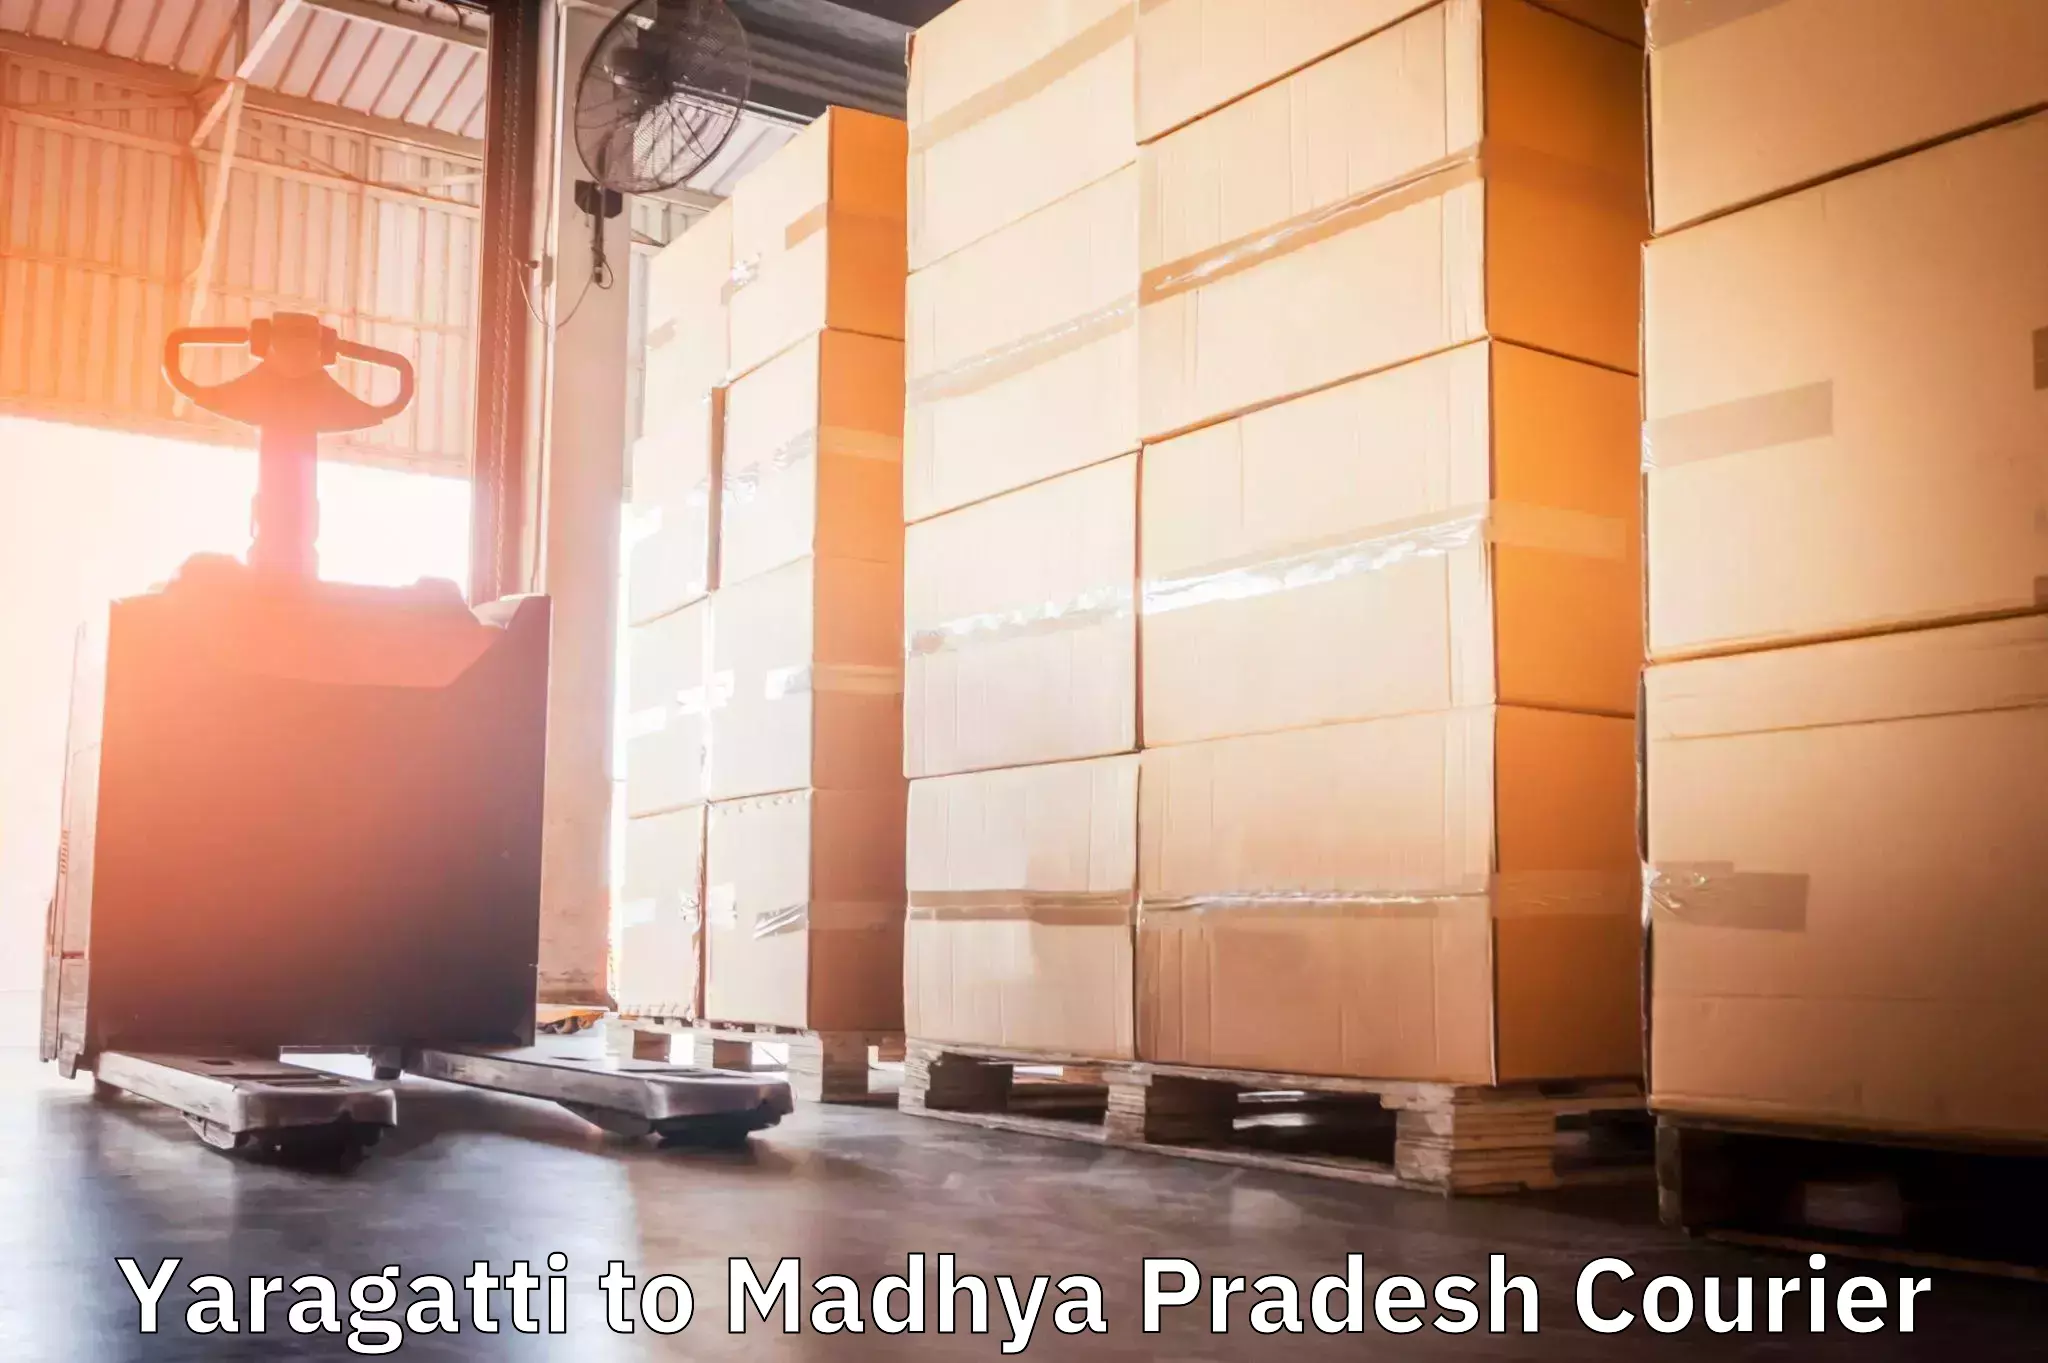 Expedited shipping methods Yaragatti to Chhindwara